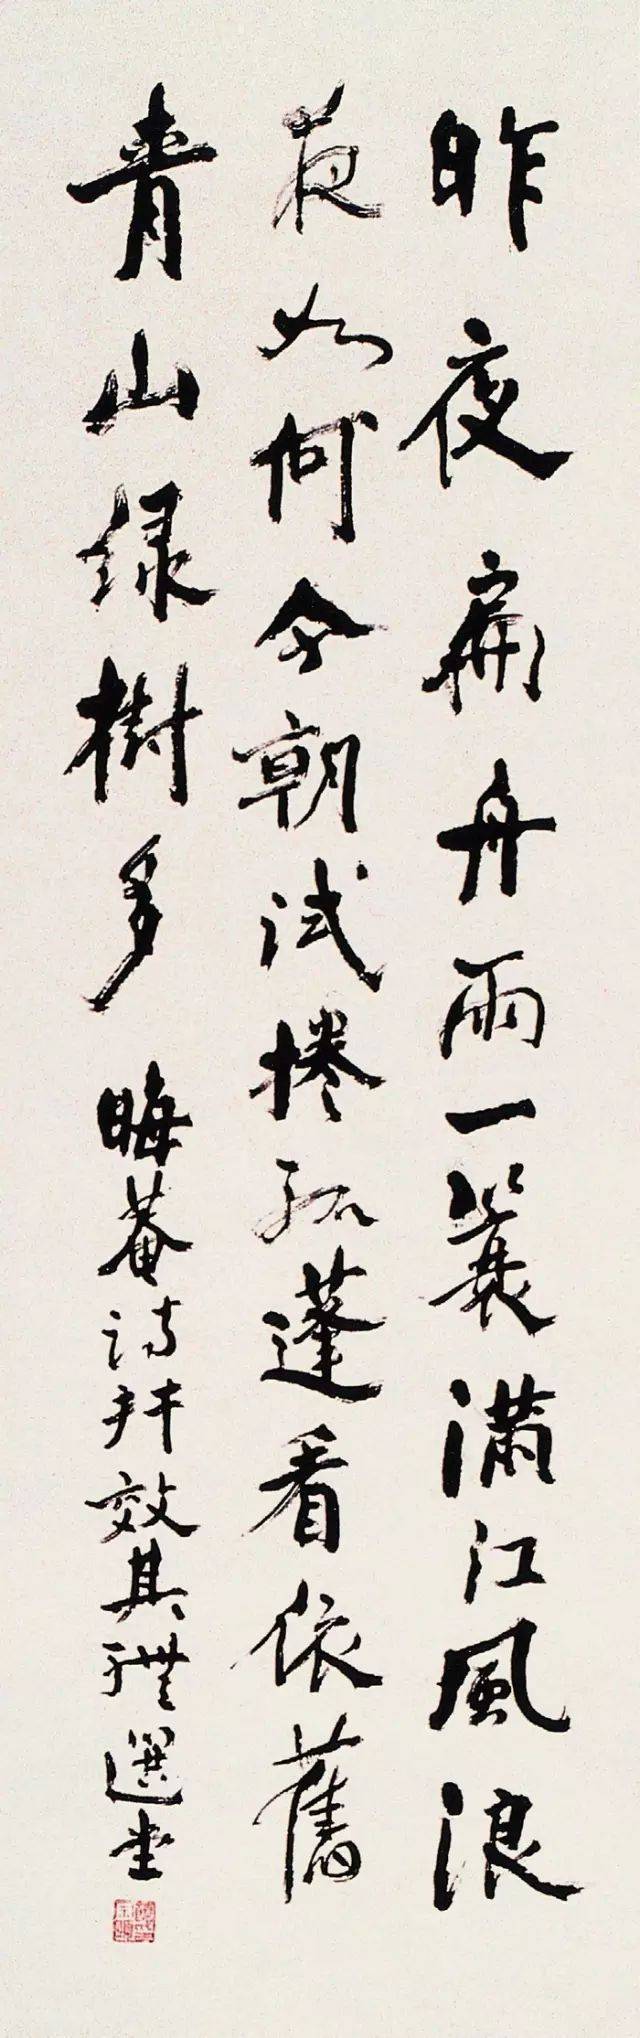 网络截图 饶宗颐先生书画欣赏 丨1917年生于广东潮安.